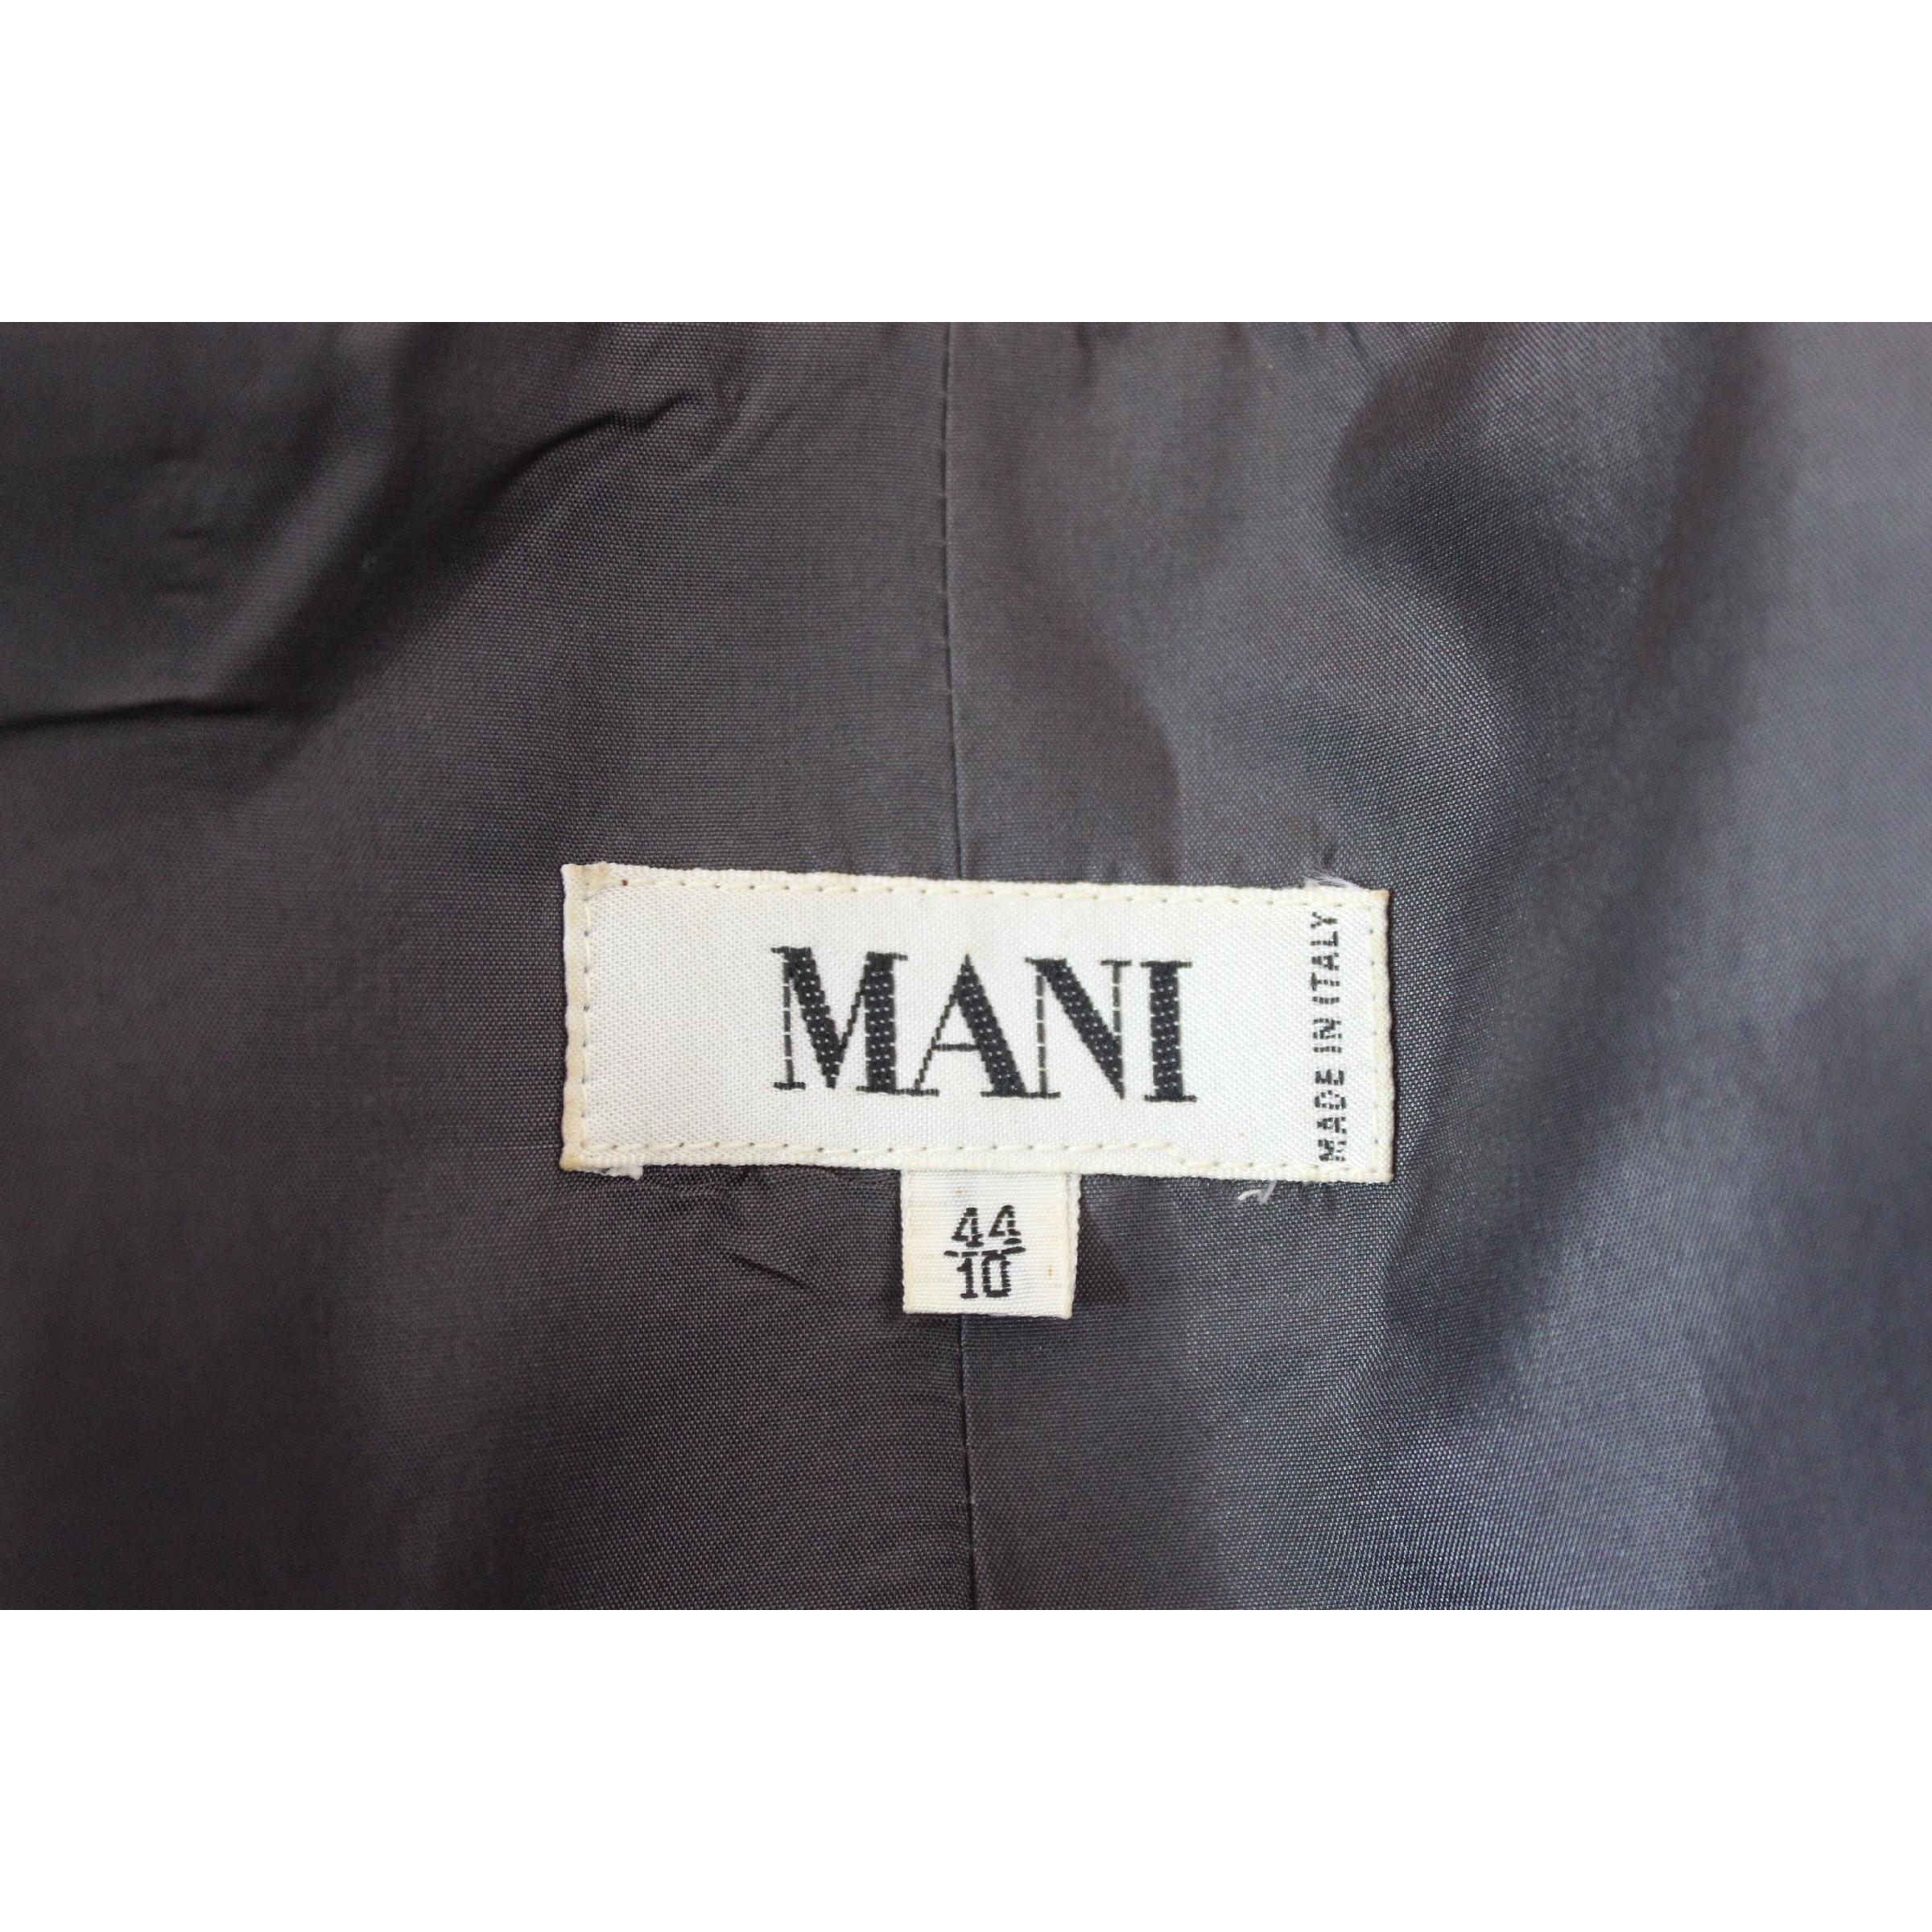 Mani by Armani Floral Damask Multicolor Violet Black Silk Slim Fit Jacket 1980s 2